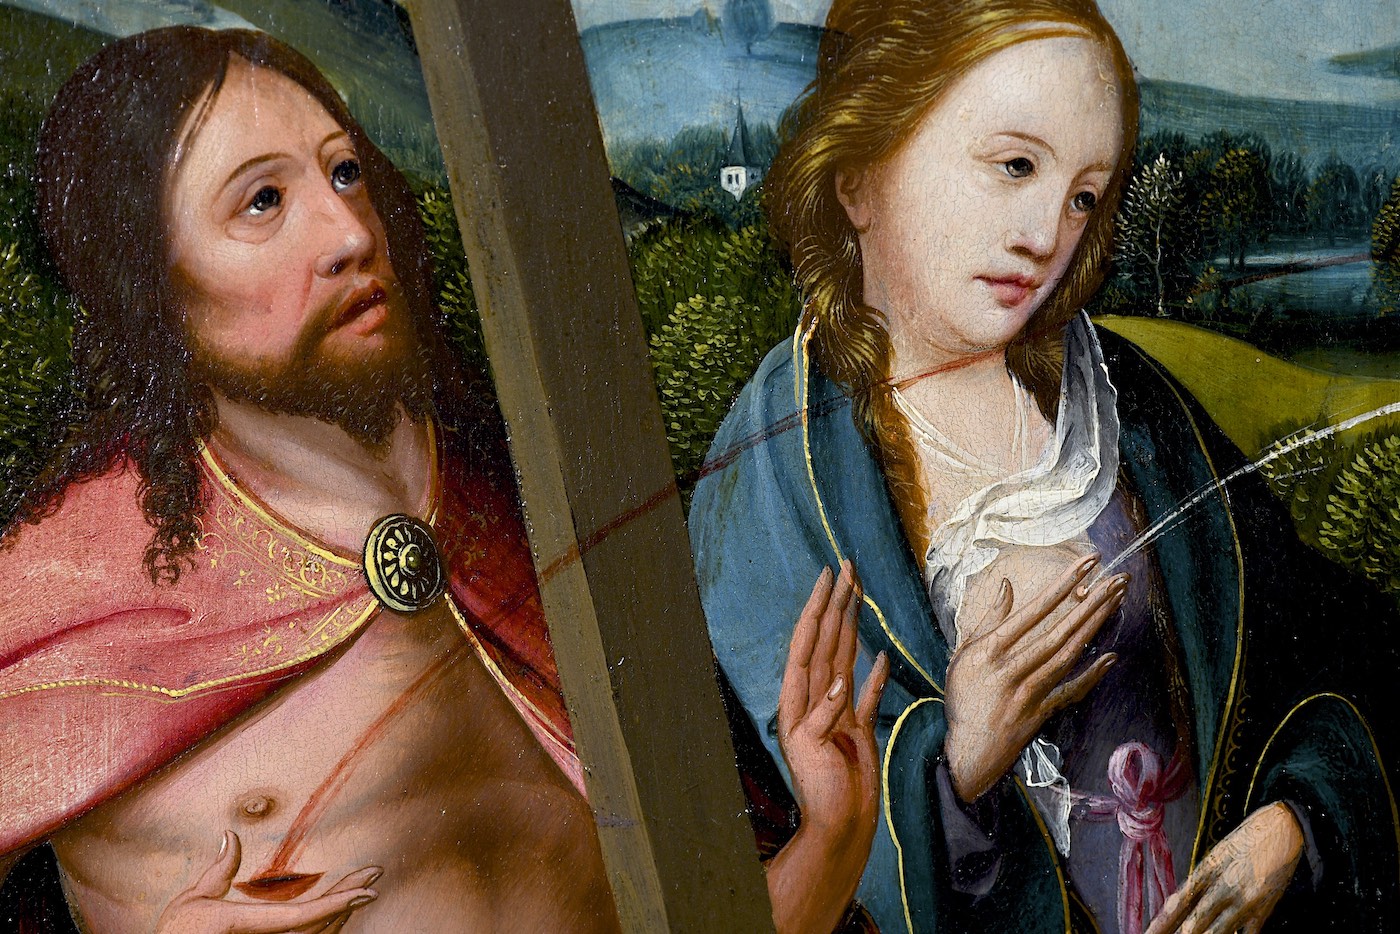 Spuitende moedermelk en bloedende vagina’s in de Middeleeuwse kunst